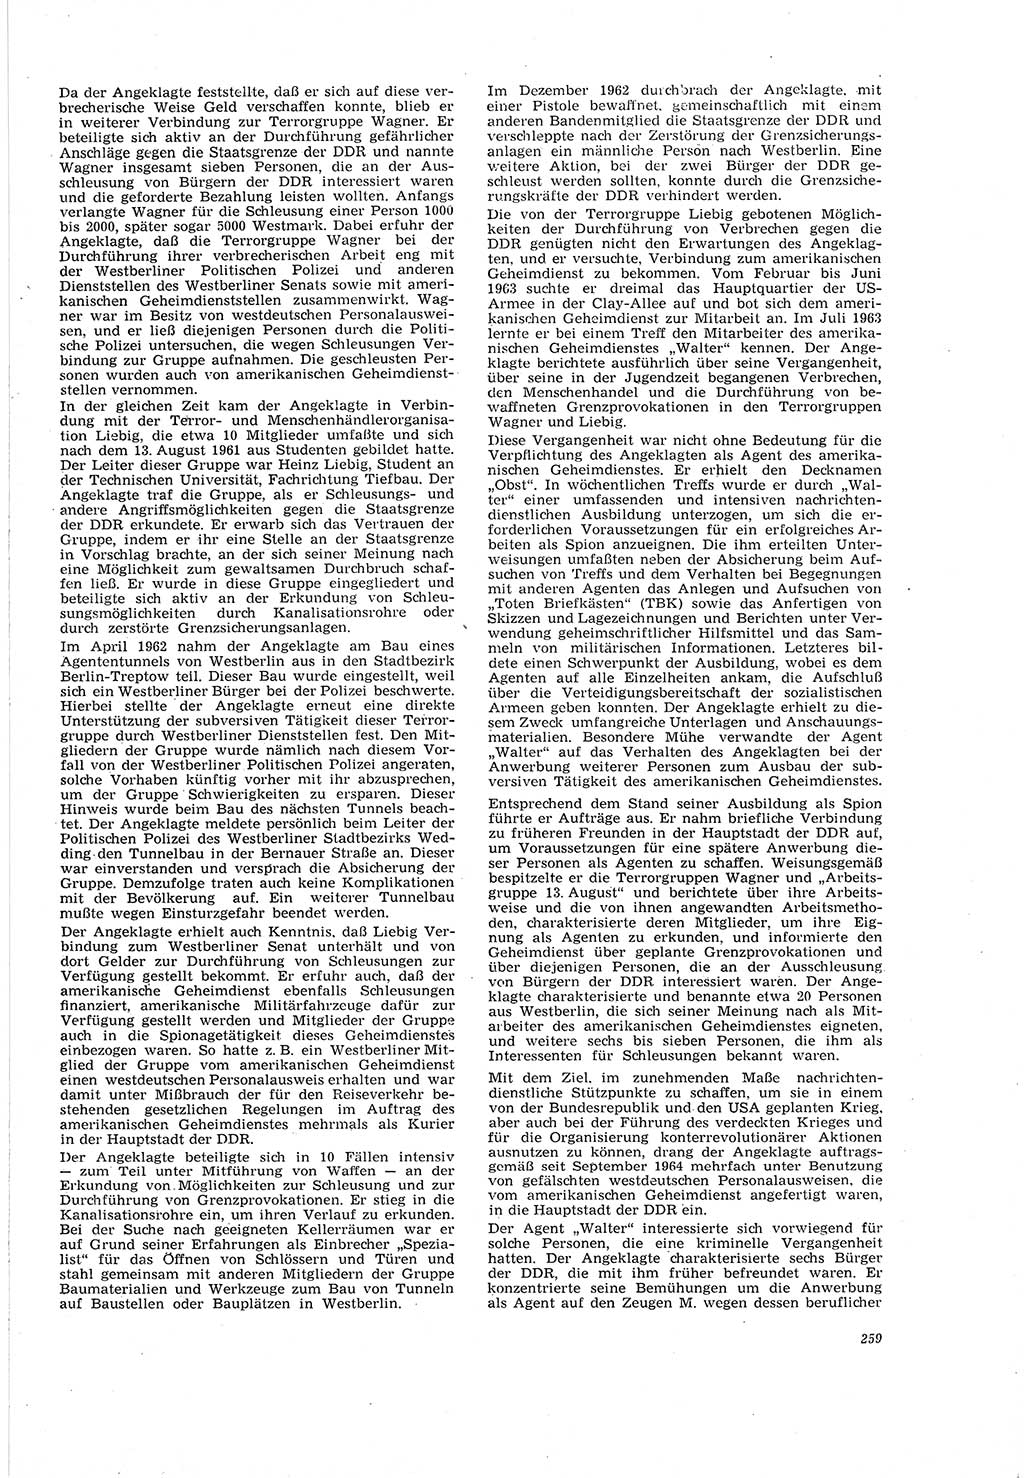 Neue Justiz (NJ), Zeitschrift für Recht und Rechtswissenschaft [Deutsche Demokratische Republik (DDR)], 20. Jahrgang 1966, Seite 259 (NJ DDR 1966, S. 259)